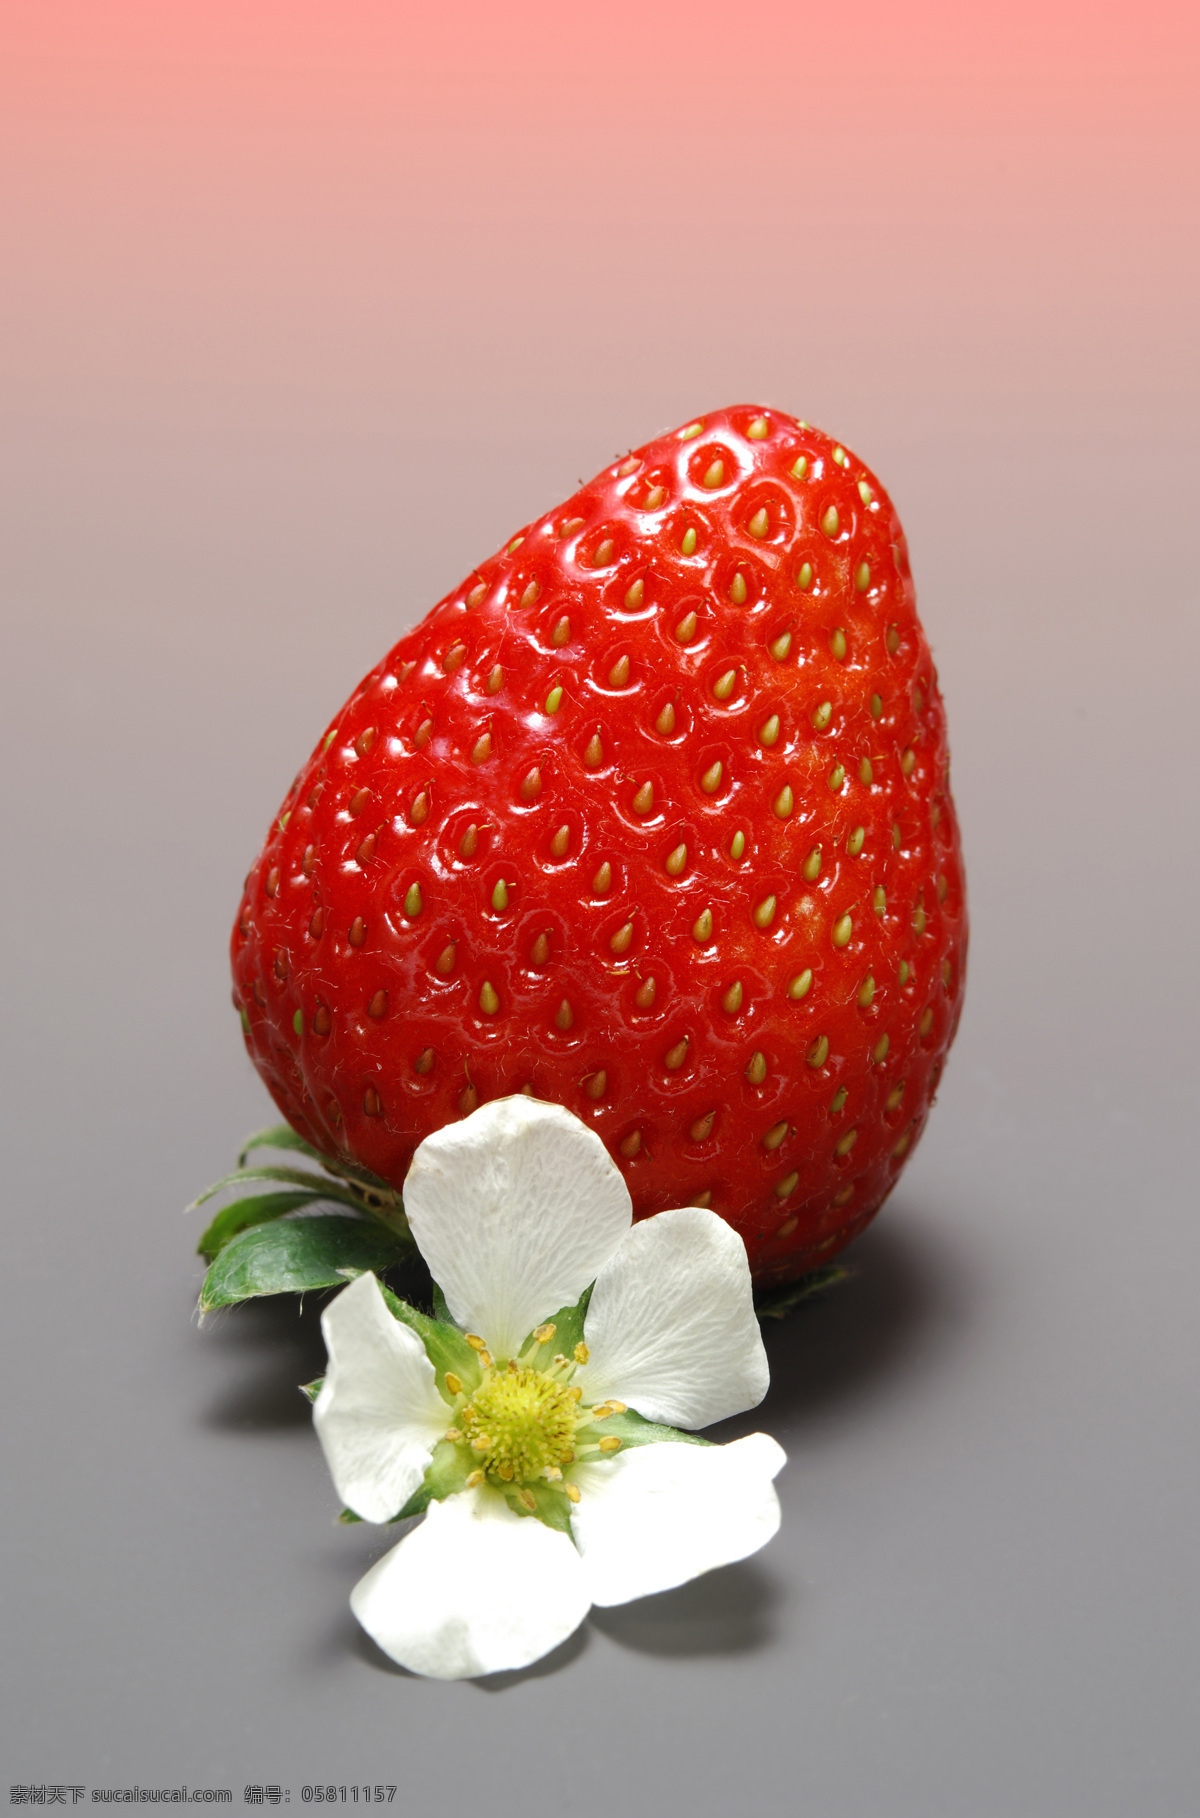 清晰 草莓免费下载 草莓 单色背景 高清 红色 水果 诱人 风景 生活 旅游餐饮